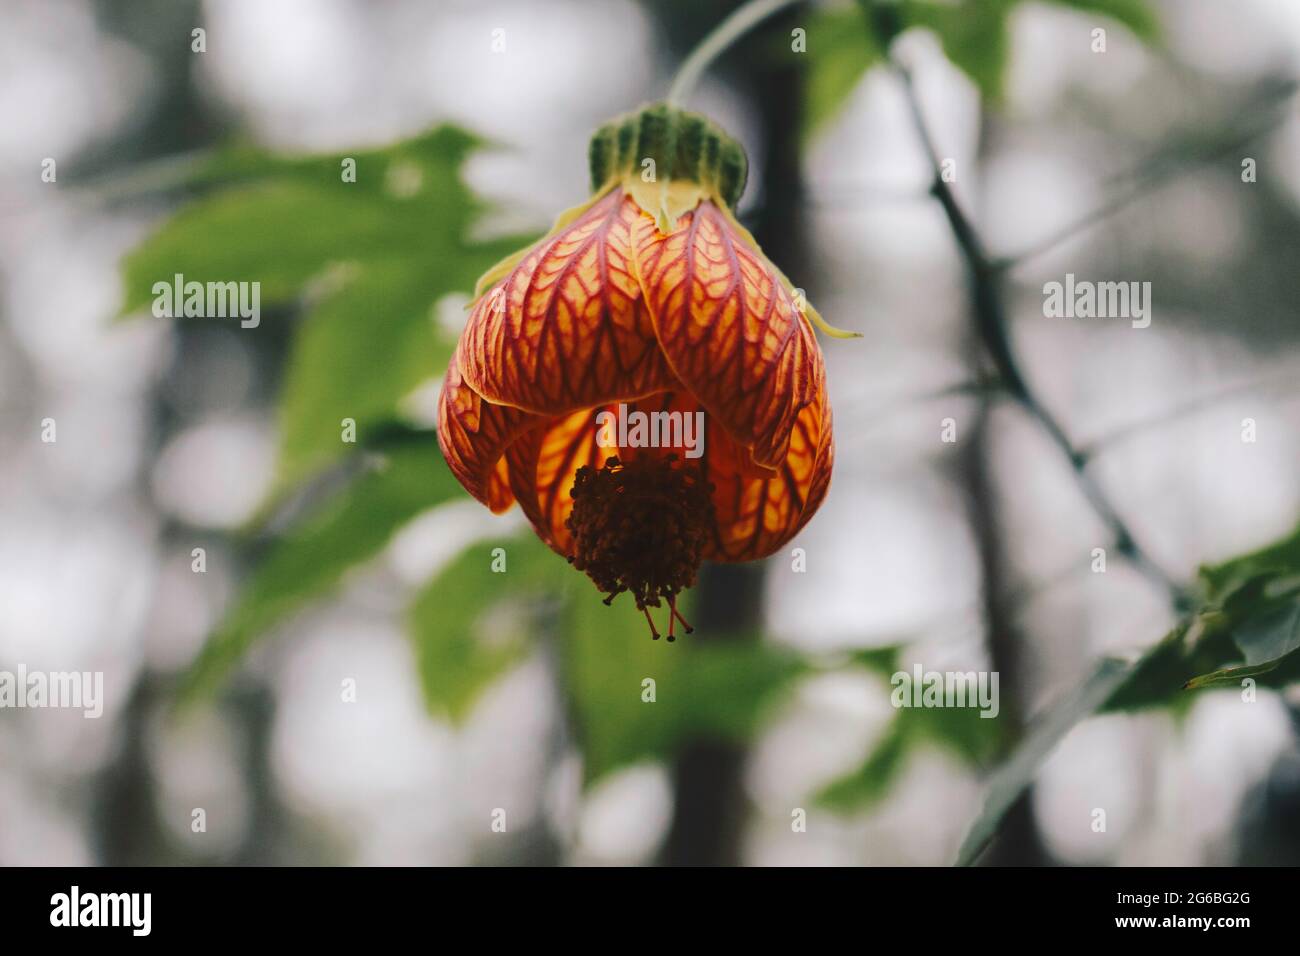 Red Abutilon (Chinese lantern) Flower and commonly known as Abutilon pictum, Abutilon striatum, Redvein Abutilon, Indian mallow artery, Redvein Maple Stock Photo